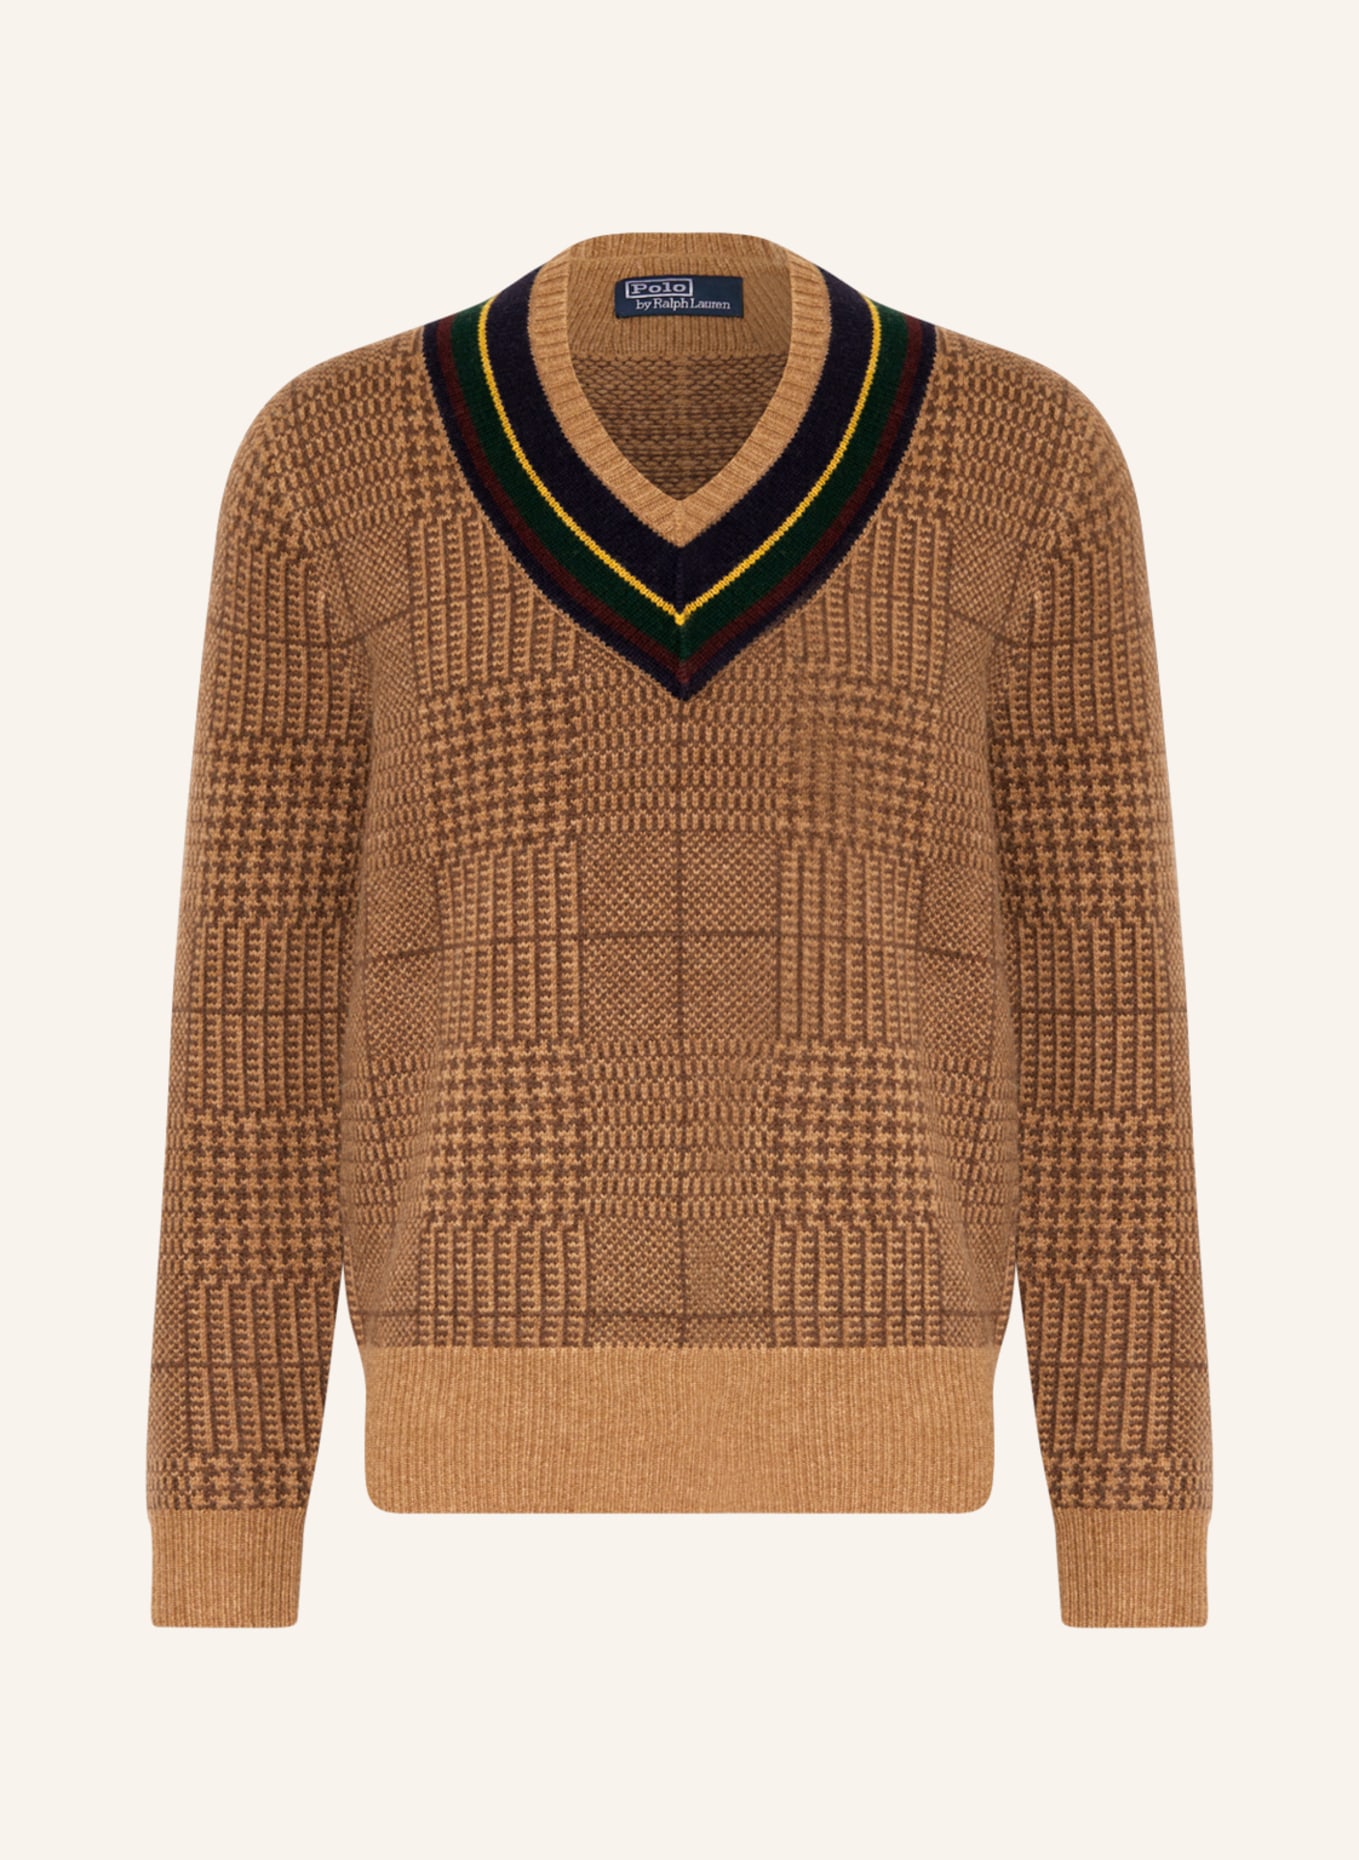 POLO RALPH LAUREN Pullover, Farbe: CAMEL/ COGNAC/ GRÜN (Bild 1)